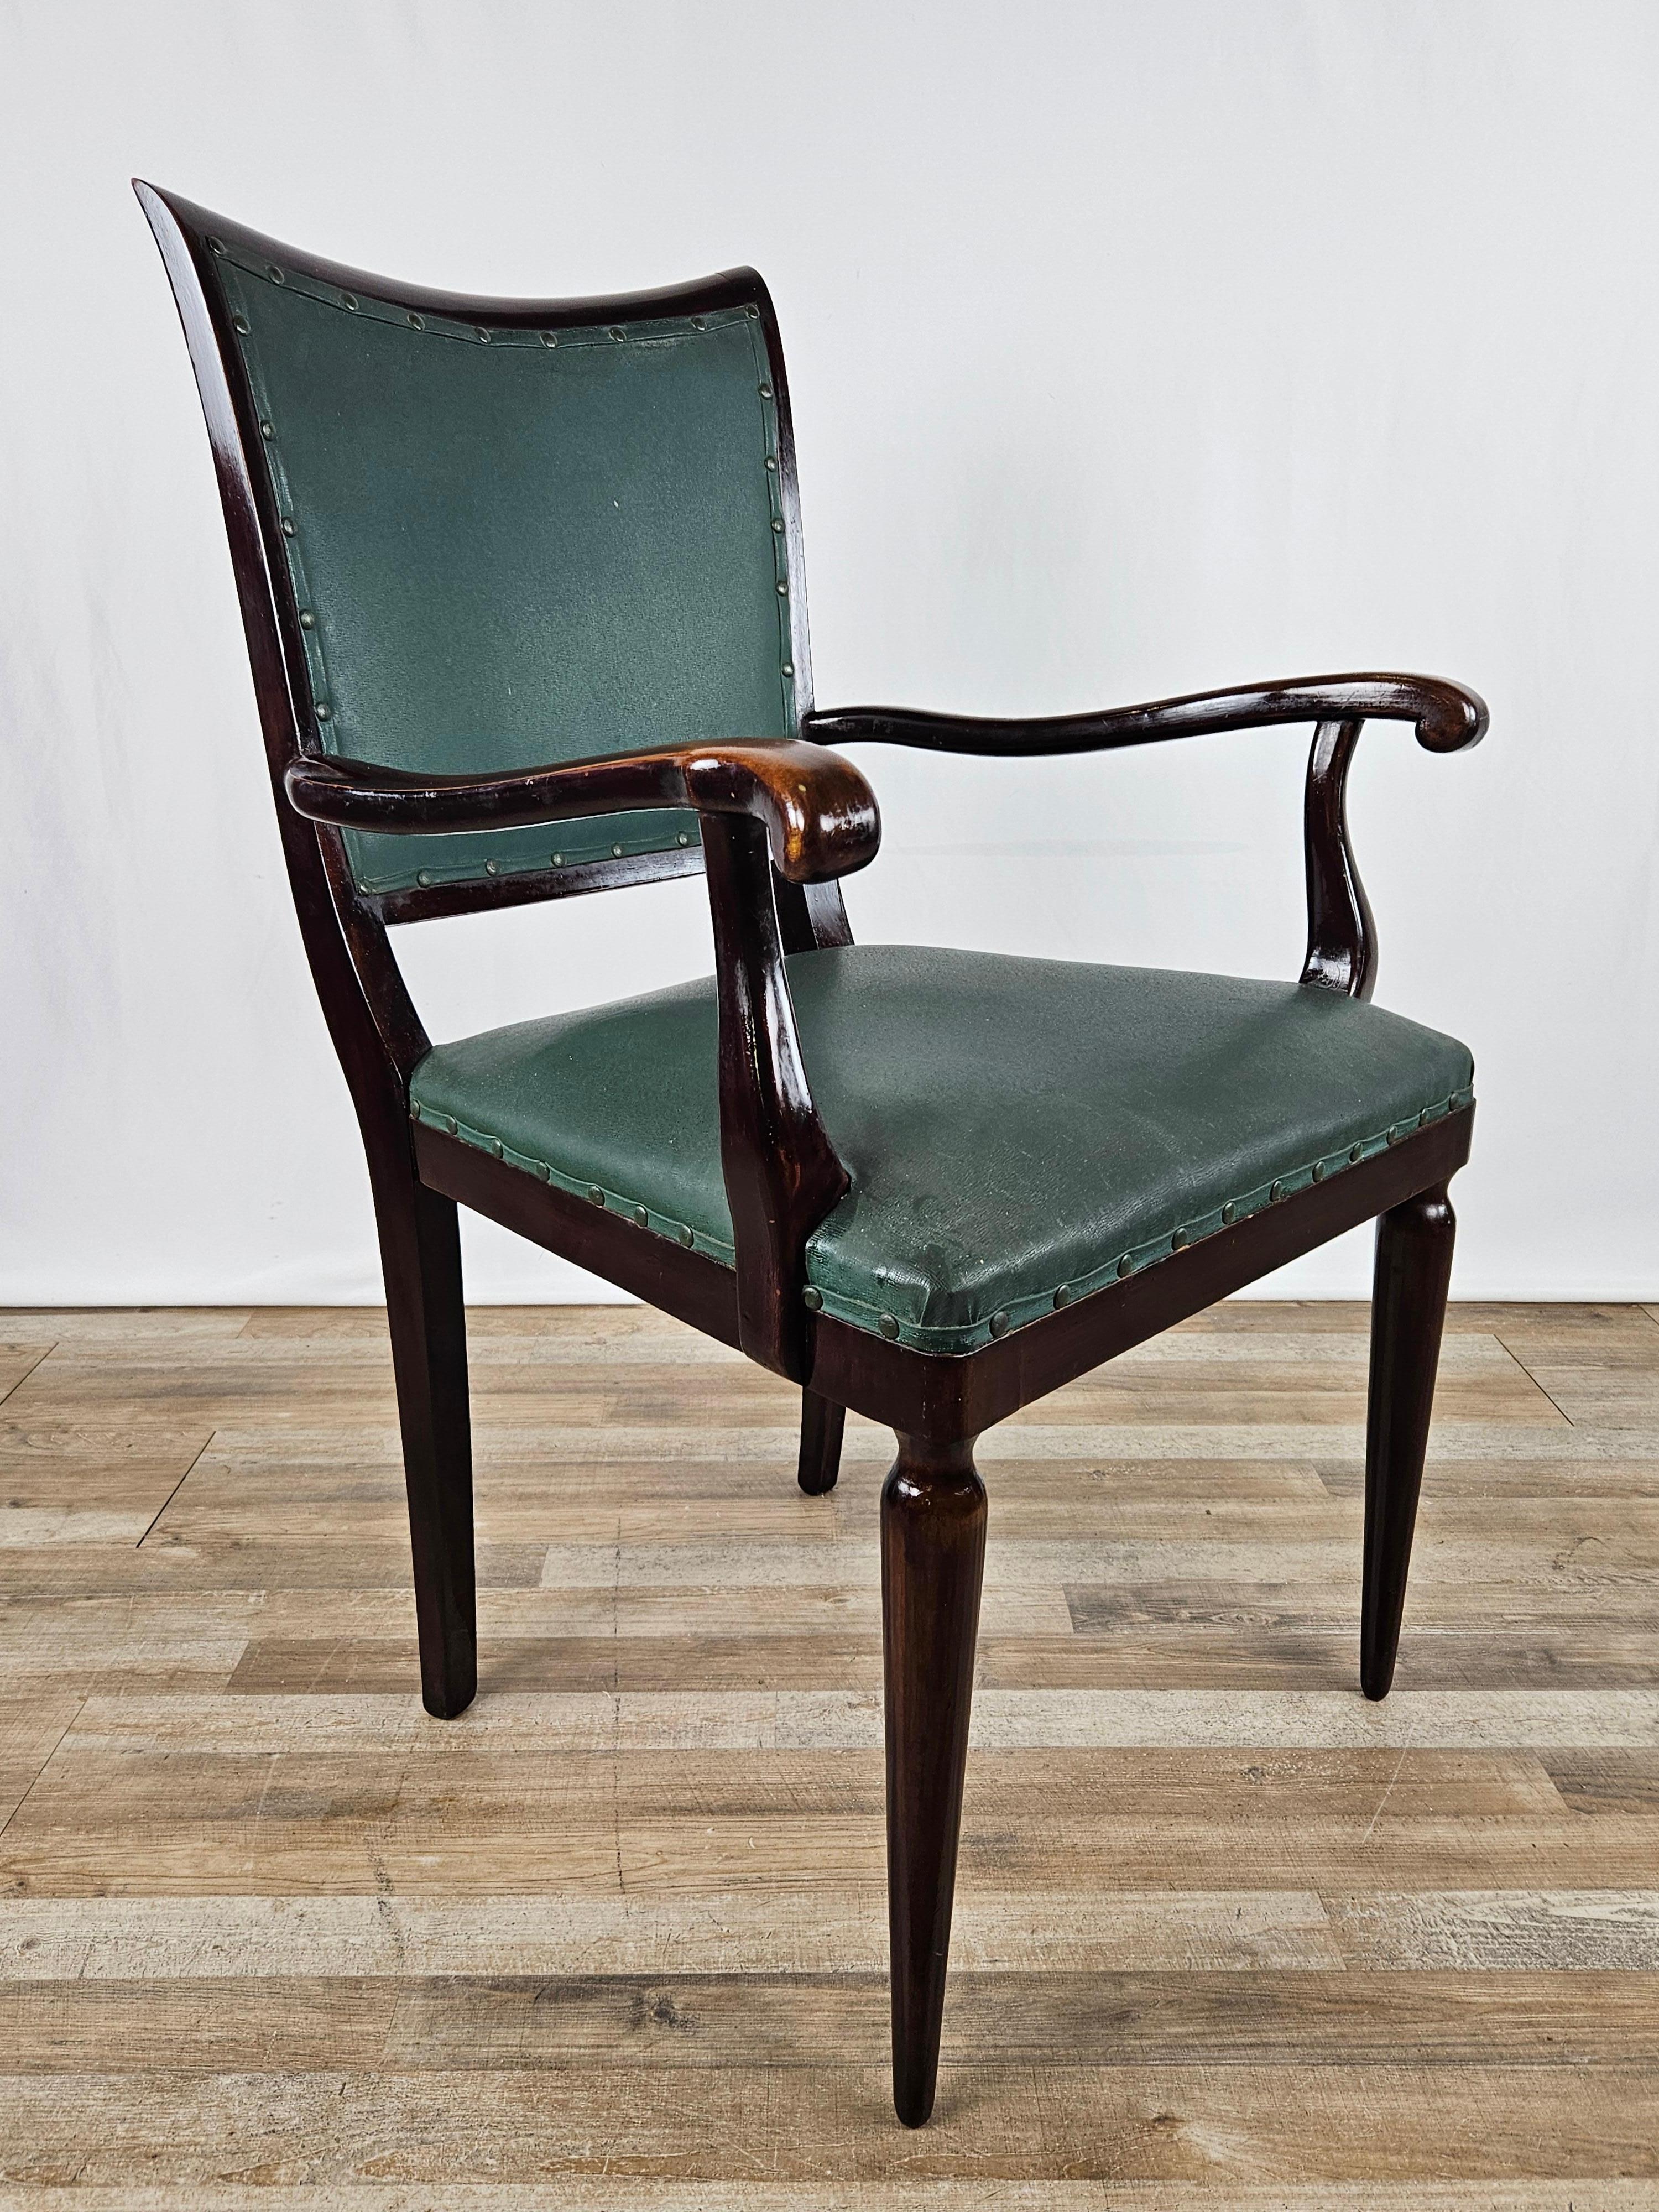 Eleganter Studiensessel aus Nussbaum mit gepolsterter Rückenlehne und Sitzfläche aus grünem Skai, verziert mit umlaufenden Nieten.

Sehr raffinierter Stuhl, der sich in stilvolle Umgebungen aller Art von modern bis antik einfügt.

Der Sessel wurde